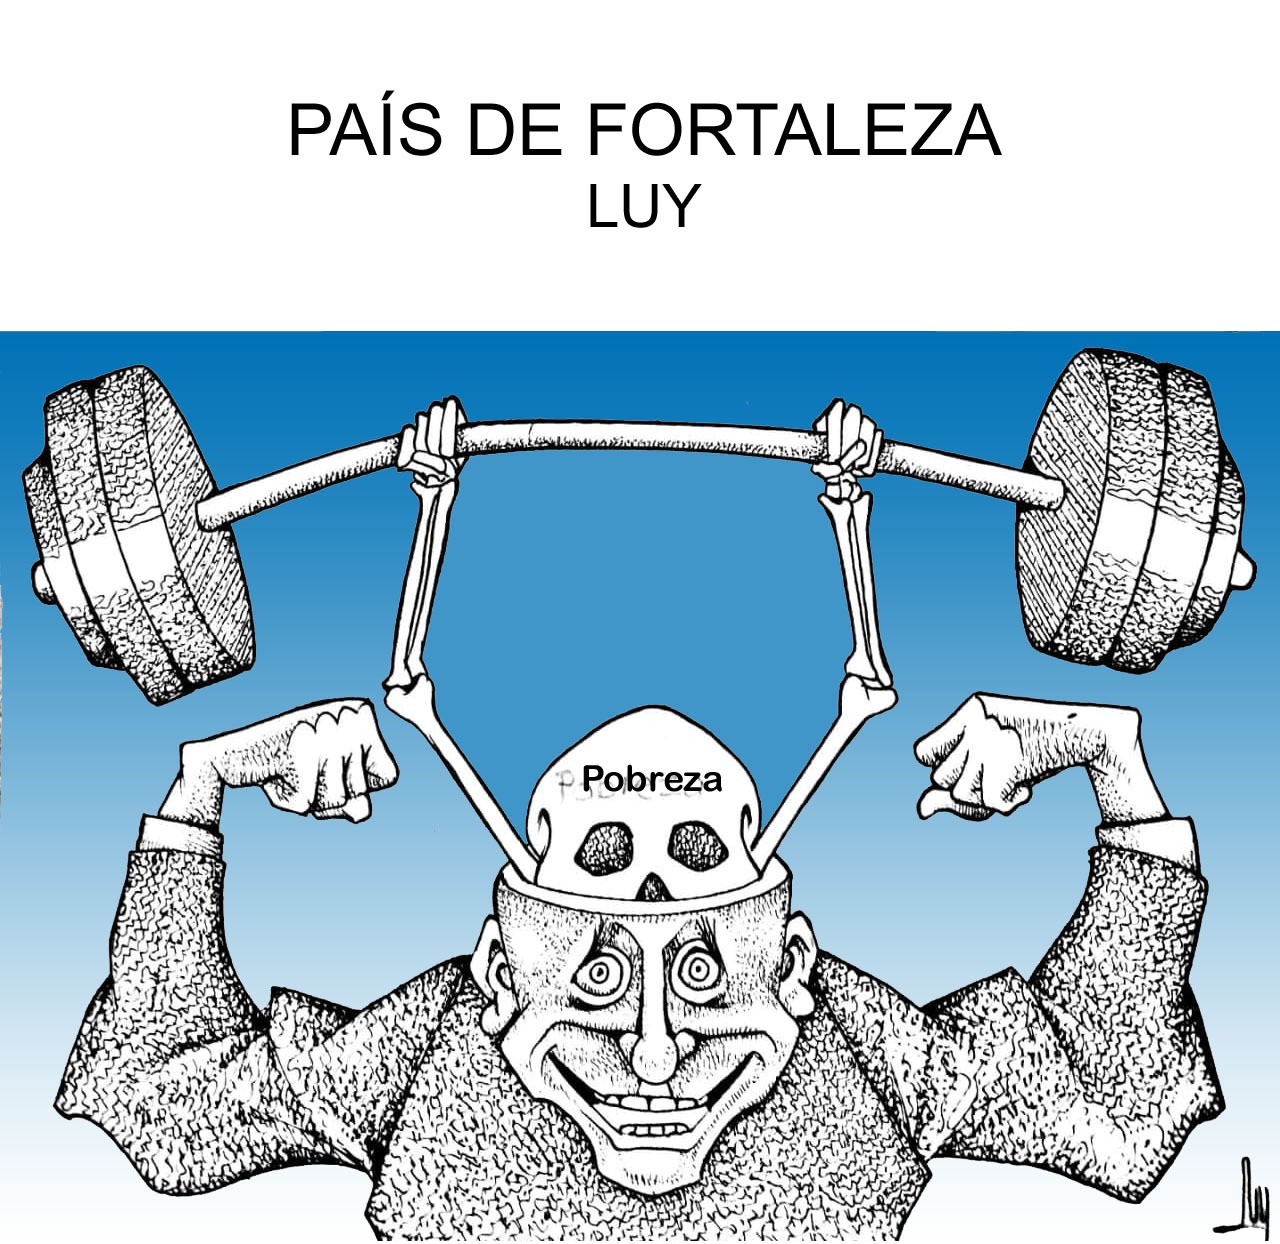 PAÍS DE FORTALEZA-LUY